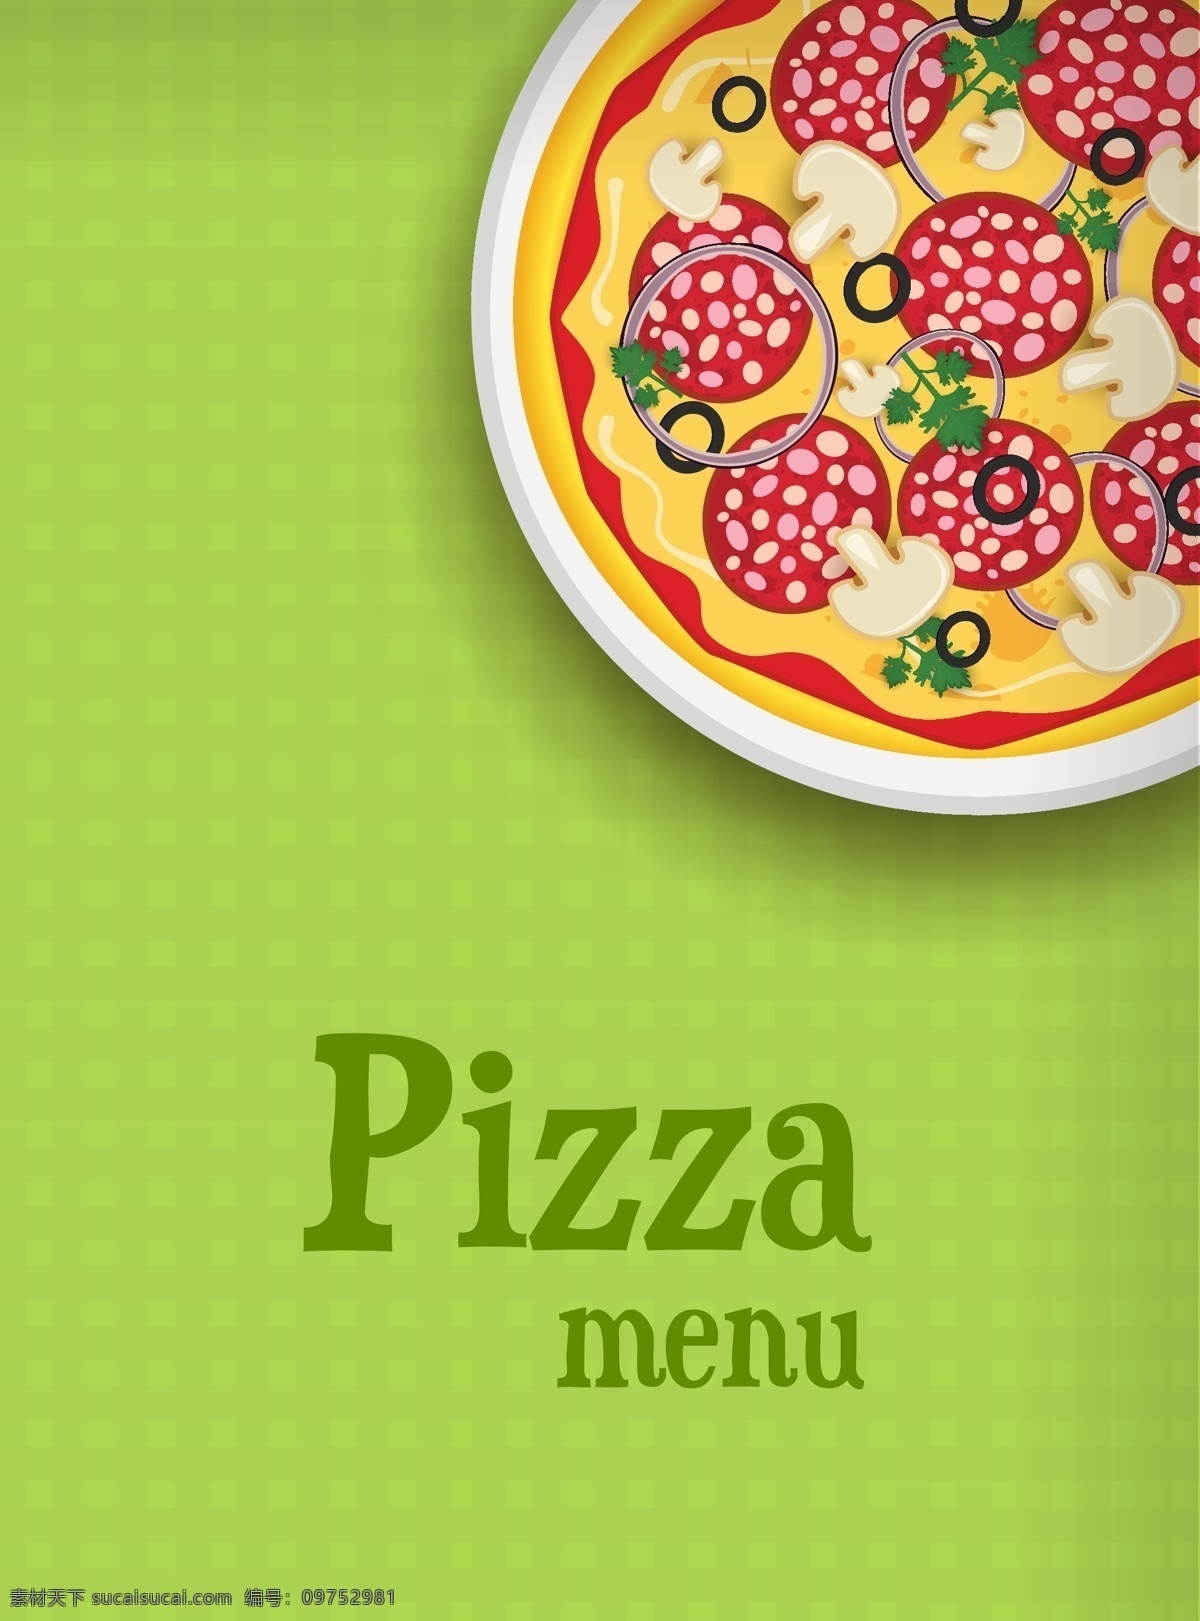 披萨 pizza 比萨 西餐 美食 意大利披萨 时尚背景 绚丽背景 背景素材 背景图案 矢量背景 背景设计 抽象背景 抽象设计 卡通背景 矢量设计 卡通设计 艺术设计 餐饮美食 生活百科 矢量